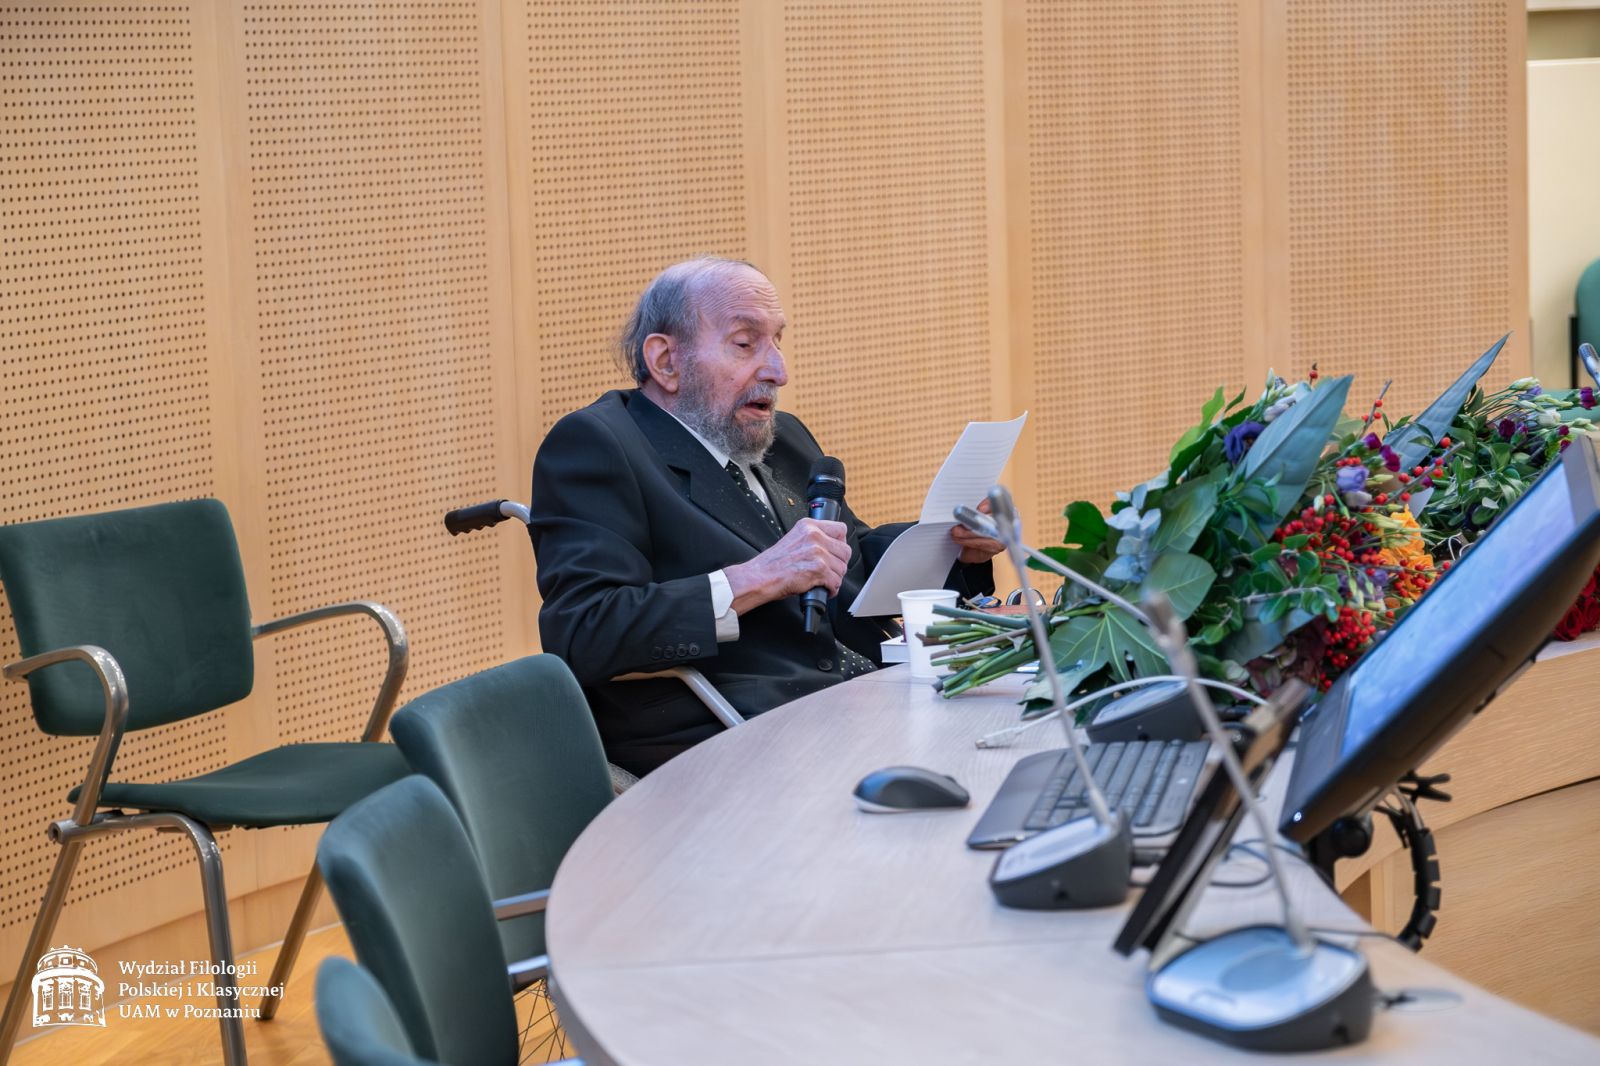 Profesor Tomasz Lewandowski siedzi w wózku inwalidzkim za stołem prezydialnym w Salonie Mickiewicza, przemawia do mikrofonu, posiłkując się kartką.